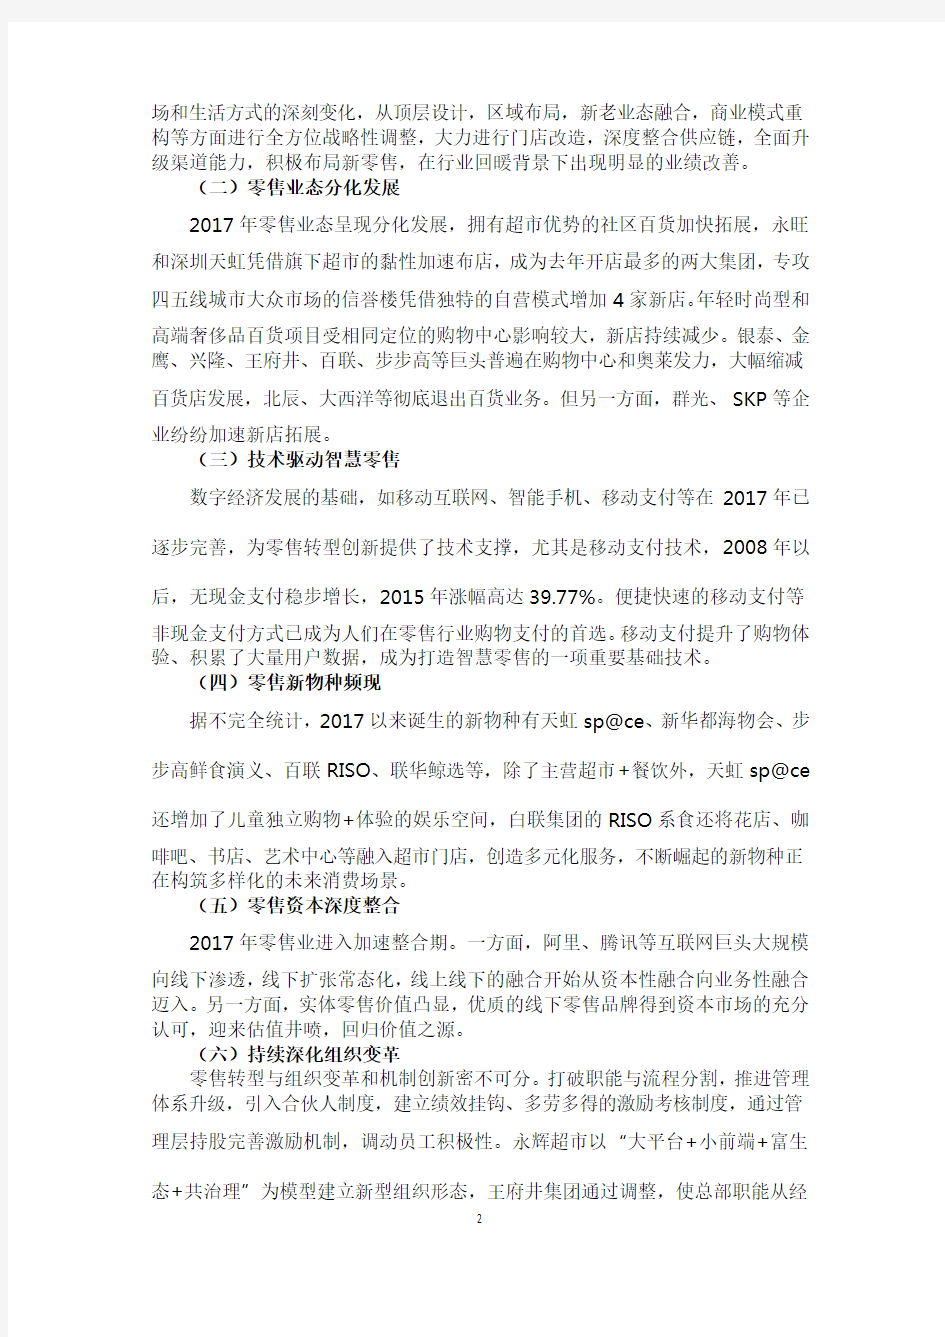 2017年中国零售业发展情况报告(精简版)